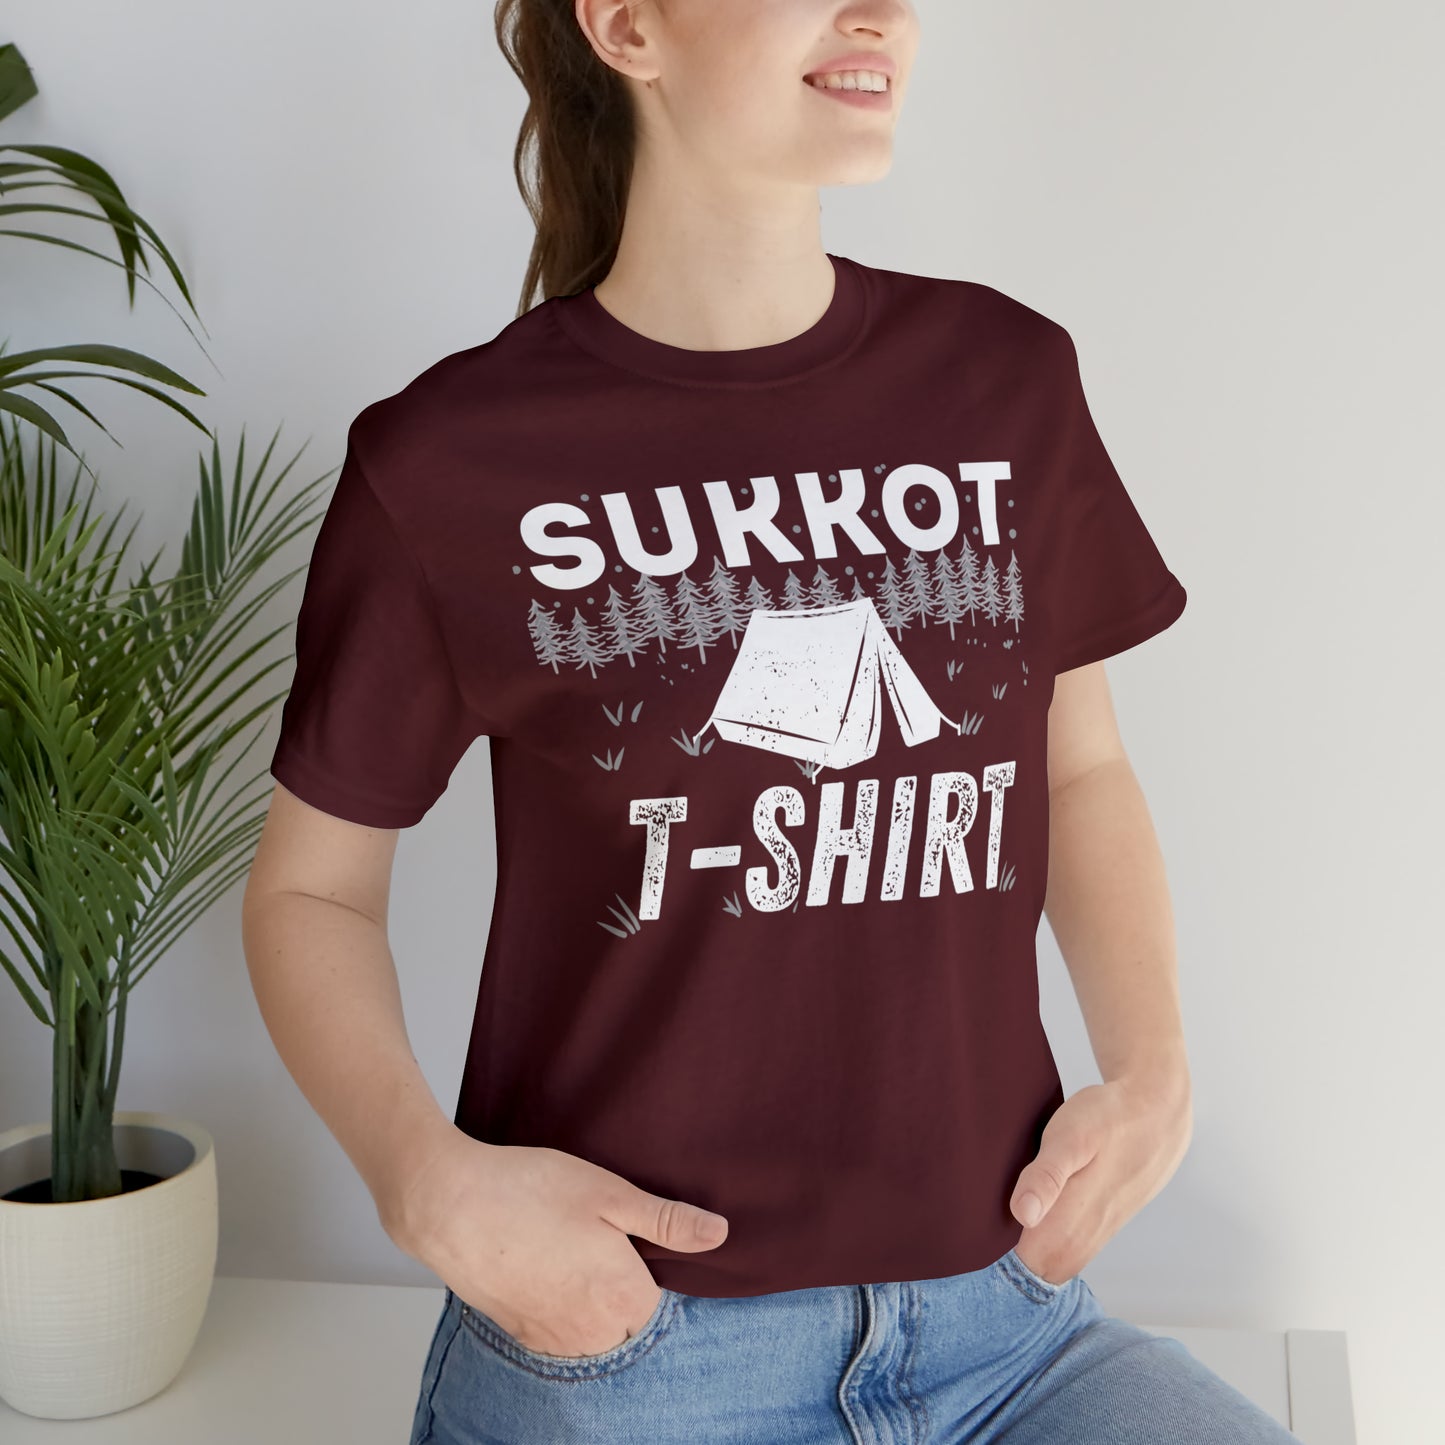 Sukkot T-shirt (Green Pastures Apparel)